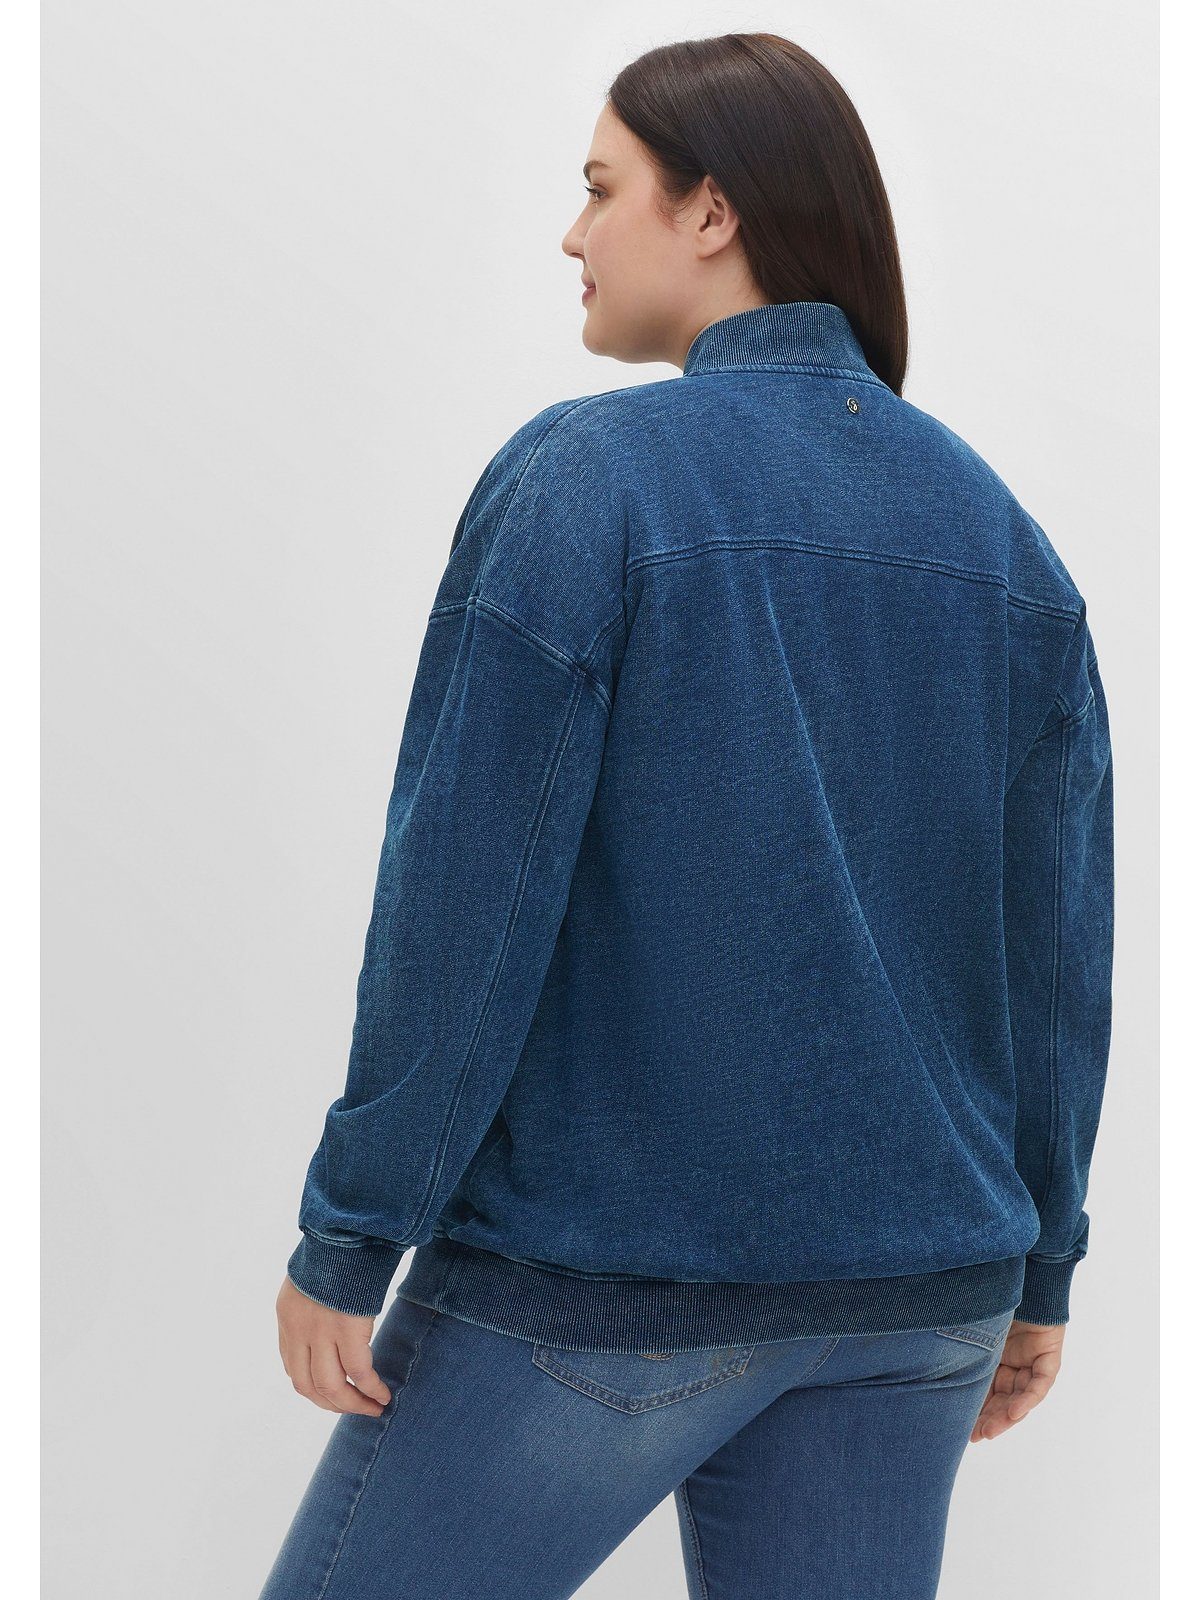 Sheego Sweatjacke Große in Größen Brusttaschen mit Jeansoptik